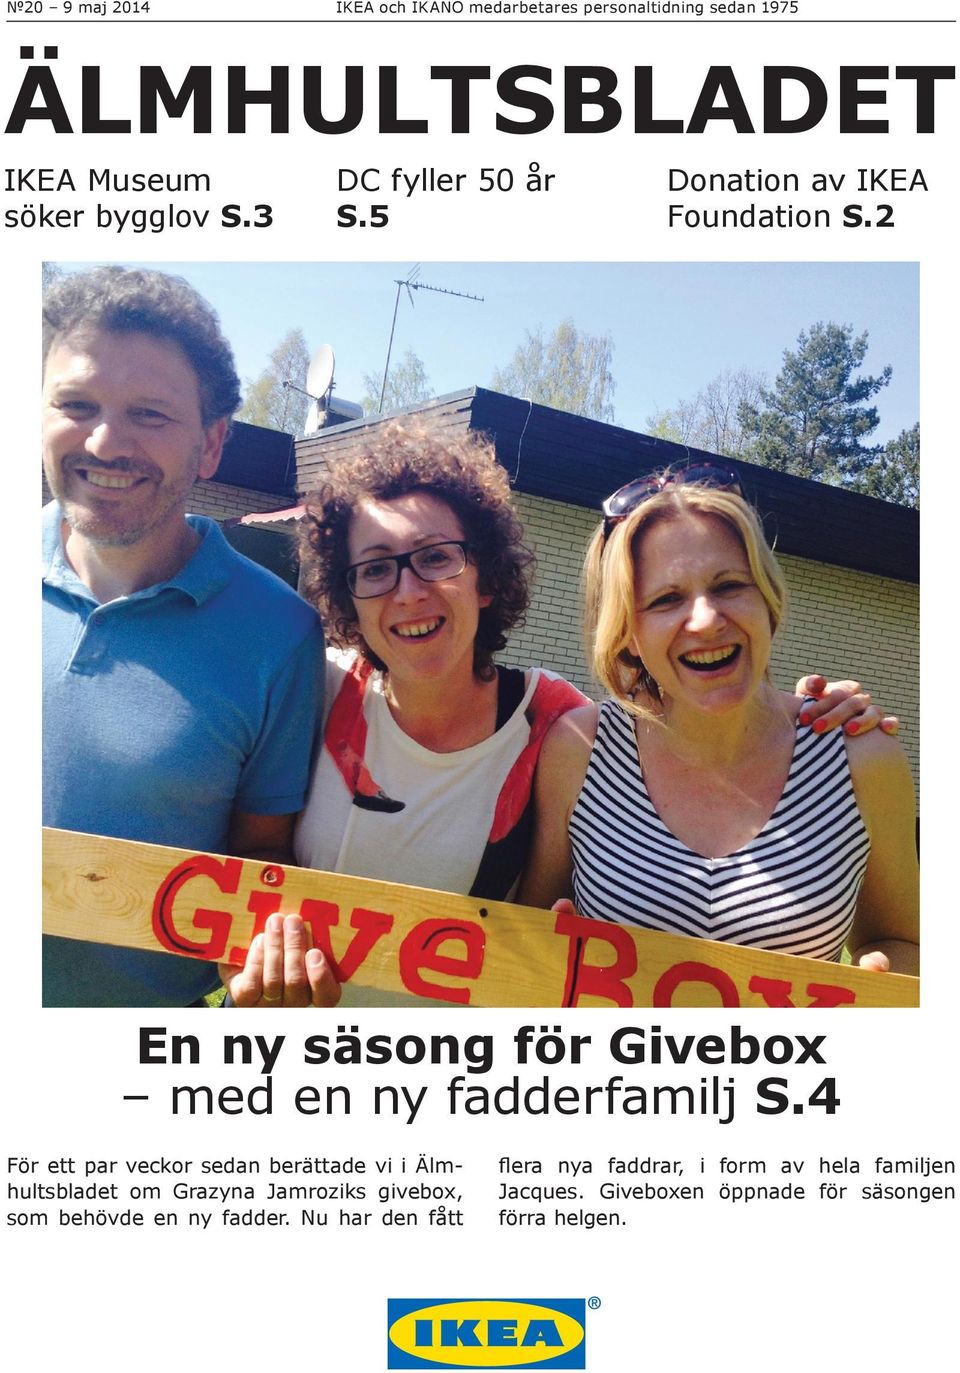 4 För ett par veckor sedan berättade vi i Älmhultsbladet om Grazyna Jamroziks givebox, som behövde en ny